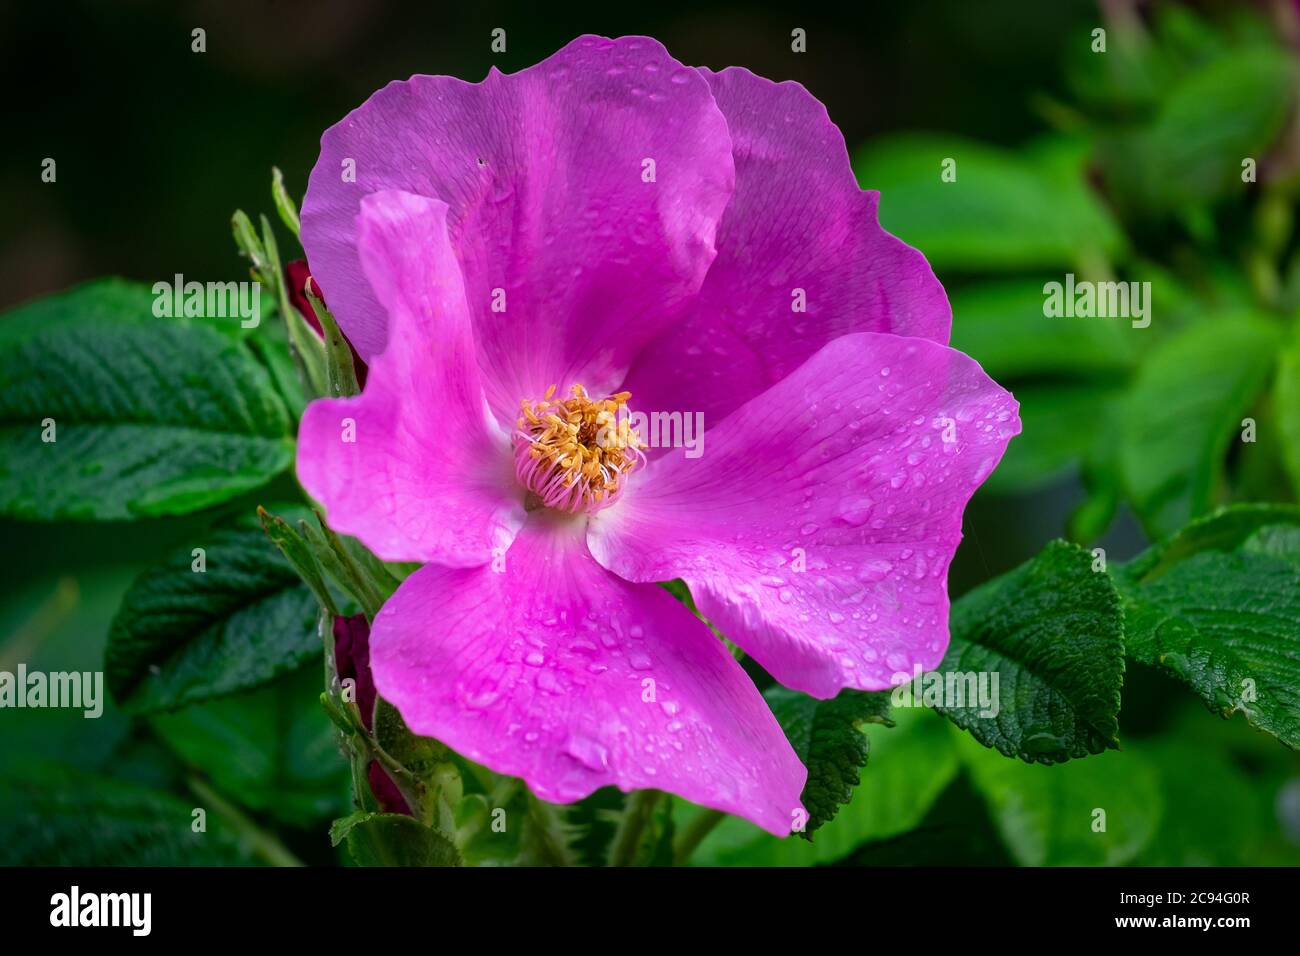 Un grande fiore di fucsia, rosa cannella selvatica, con un centro giallo. Gli stampini sono gialli, i petali sono papati e rosa con una superficie lucida. Foto Stock